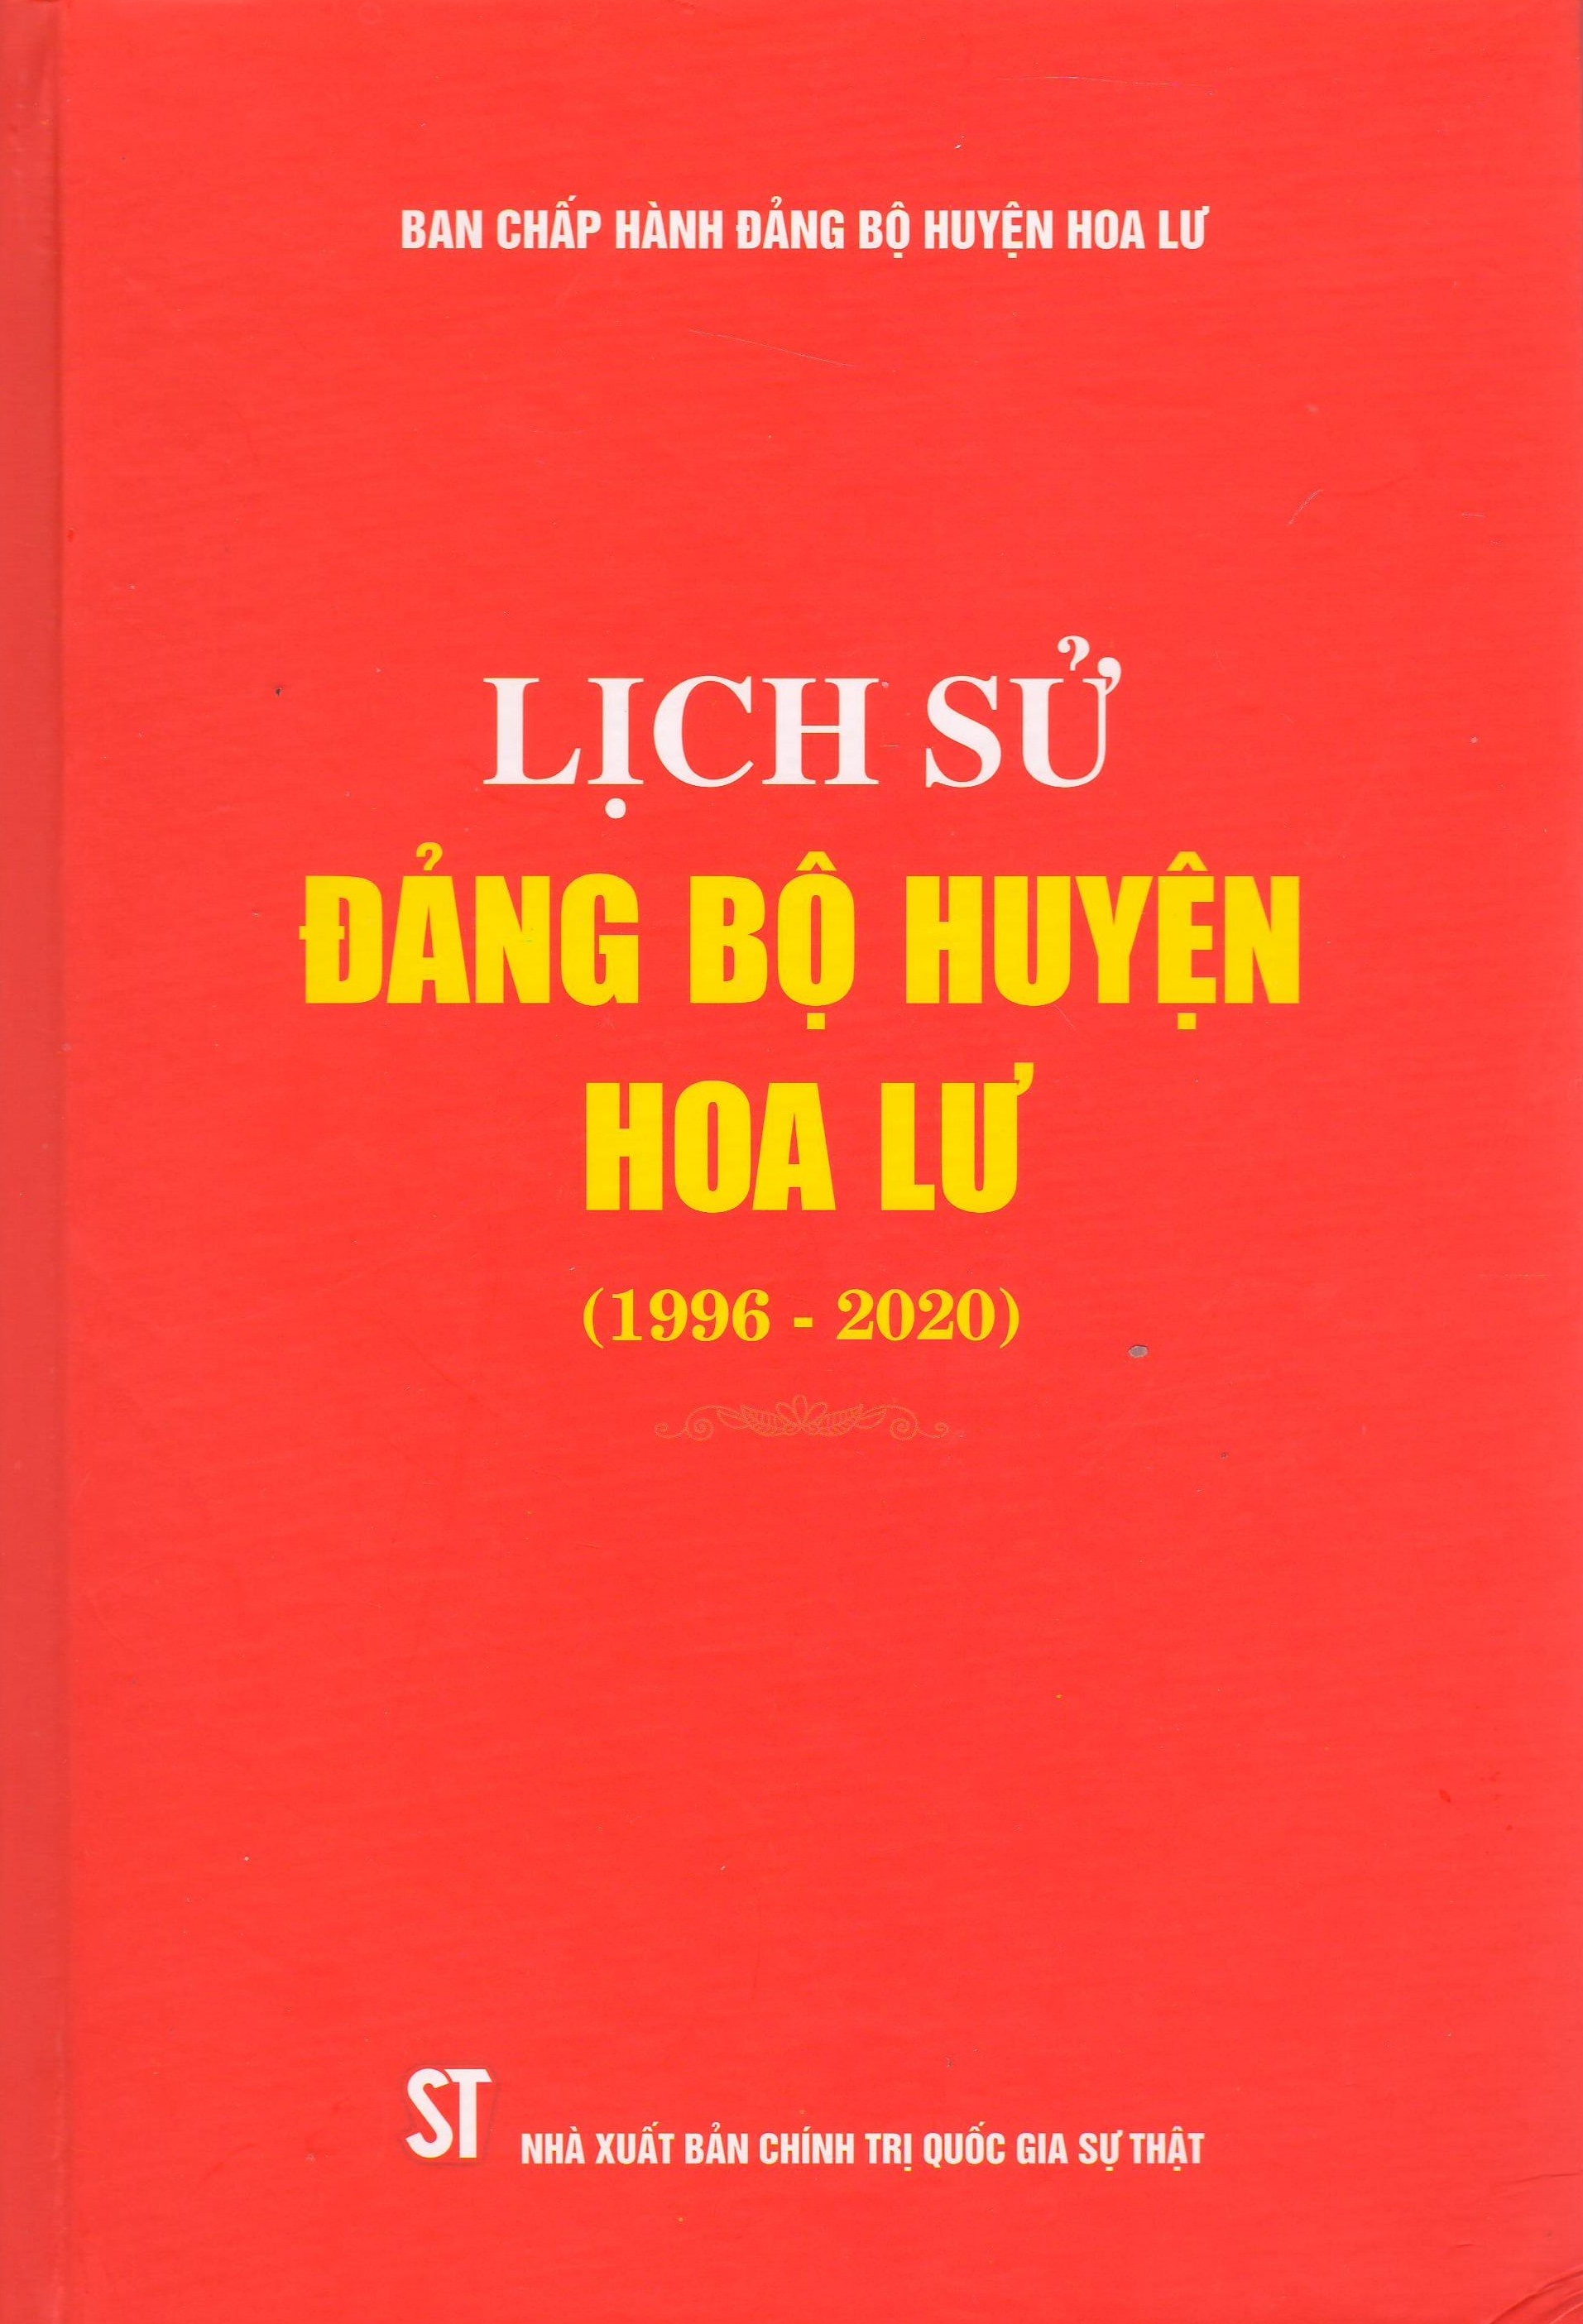 Lịch sử Đảng bộ huyện Hoa Lư (1996 - 2020)